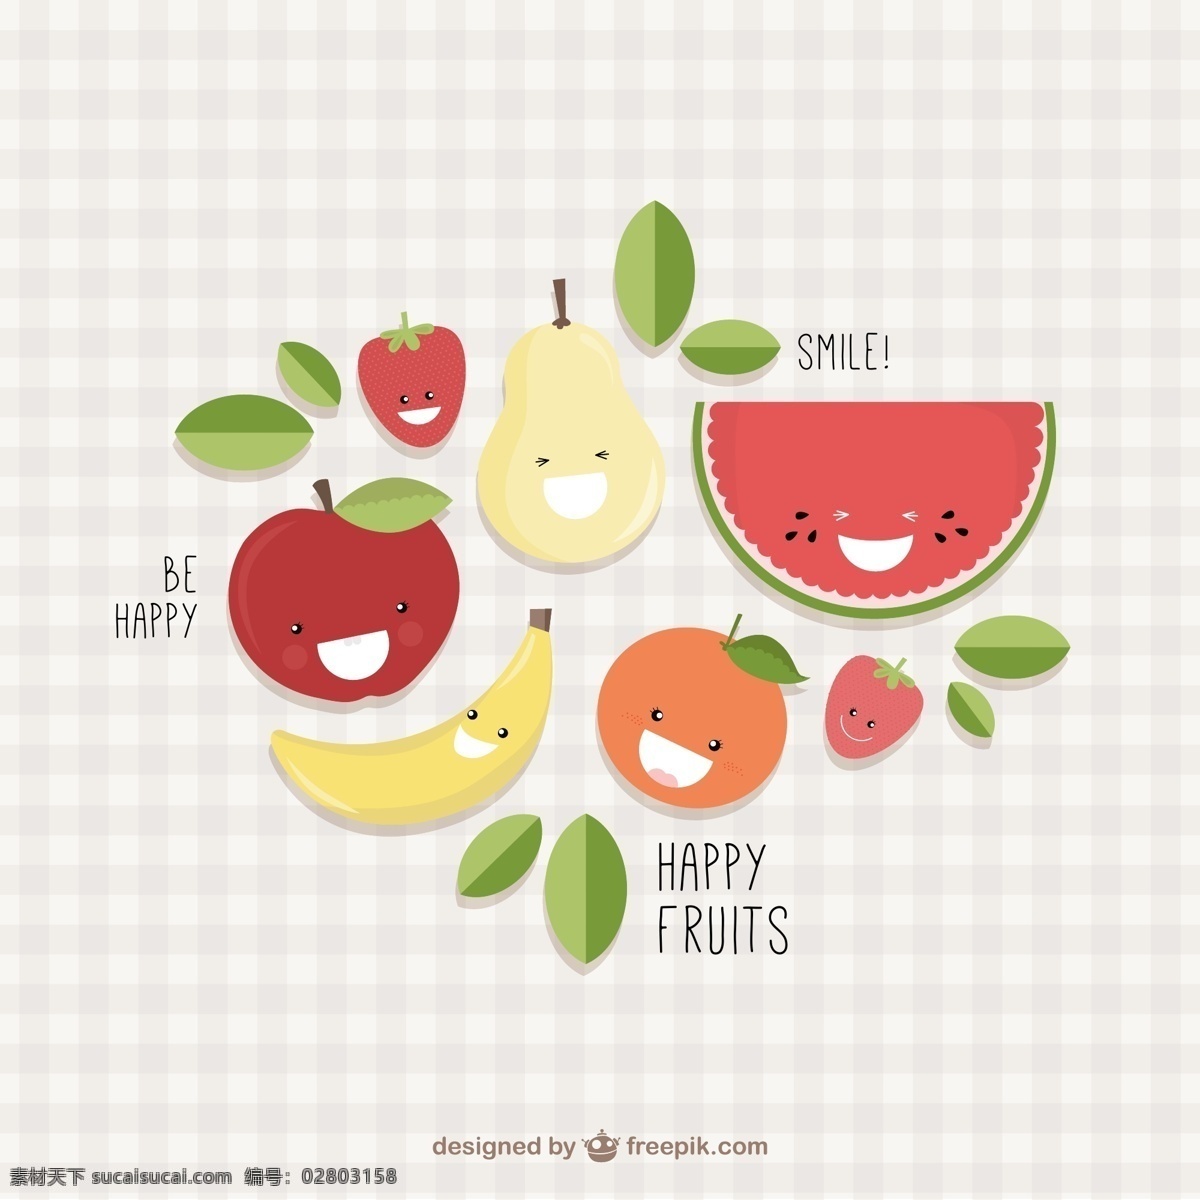 可爱水果 可爱卡通水果 芒果 苹果 香蕉 梨 牛油果 西瓜 葡萄 橙子 水果 卡通 表情 平面素材 白色